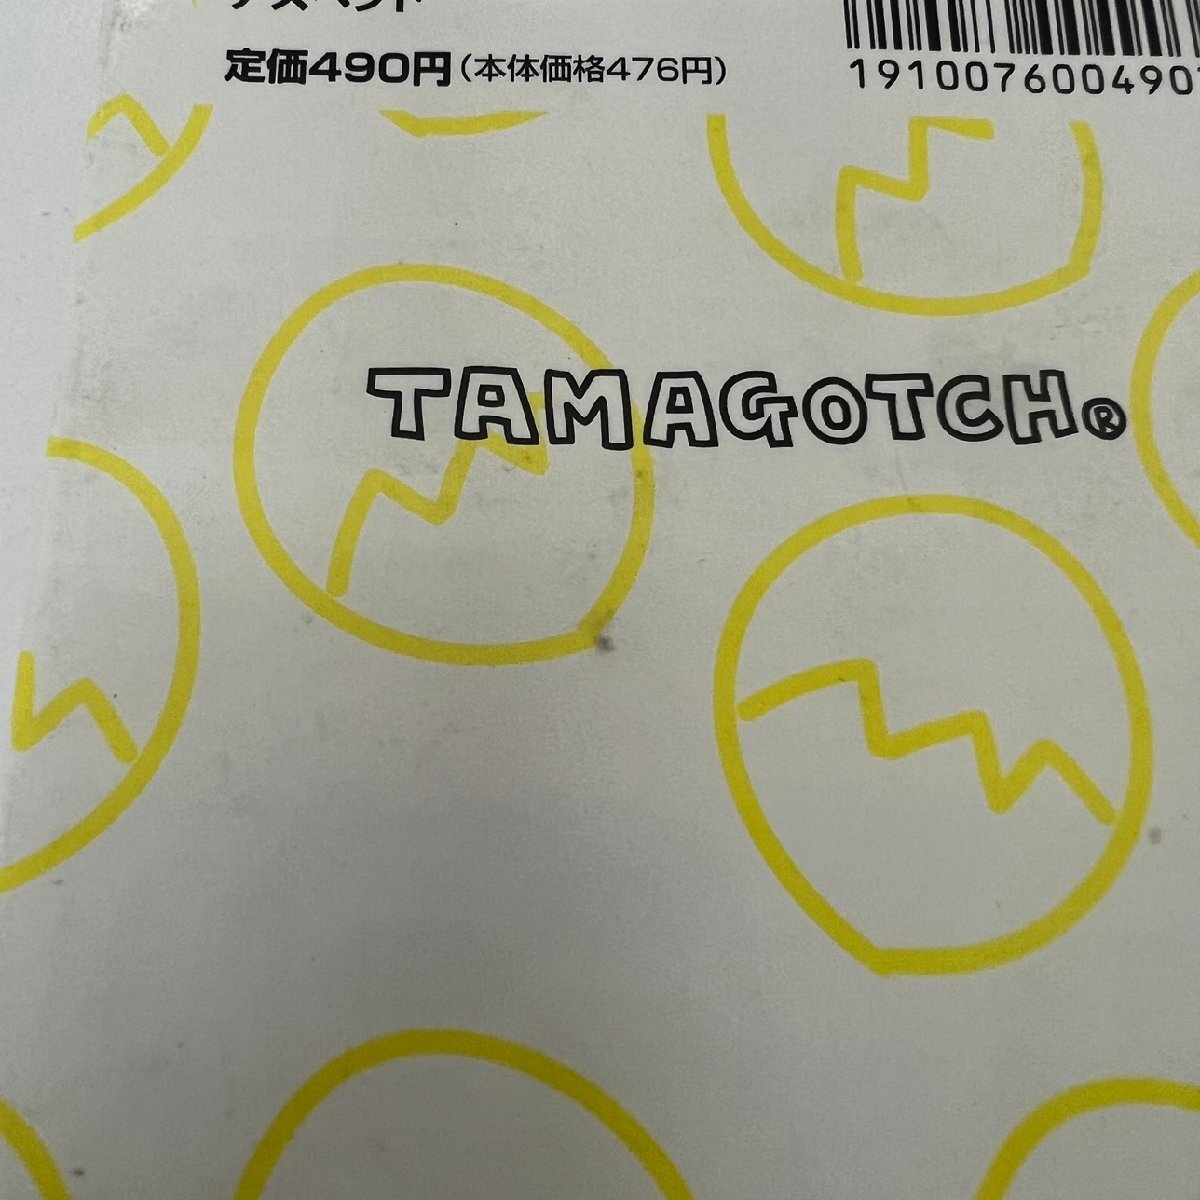 [86]BANDAI Bandai TAMAGOTCHI Tamagotchi 4 пункт . суммировать ..... имеется работоспособность не проверялась товар текущее состояние товар б/у товар 1997